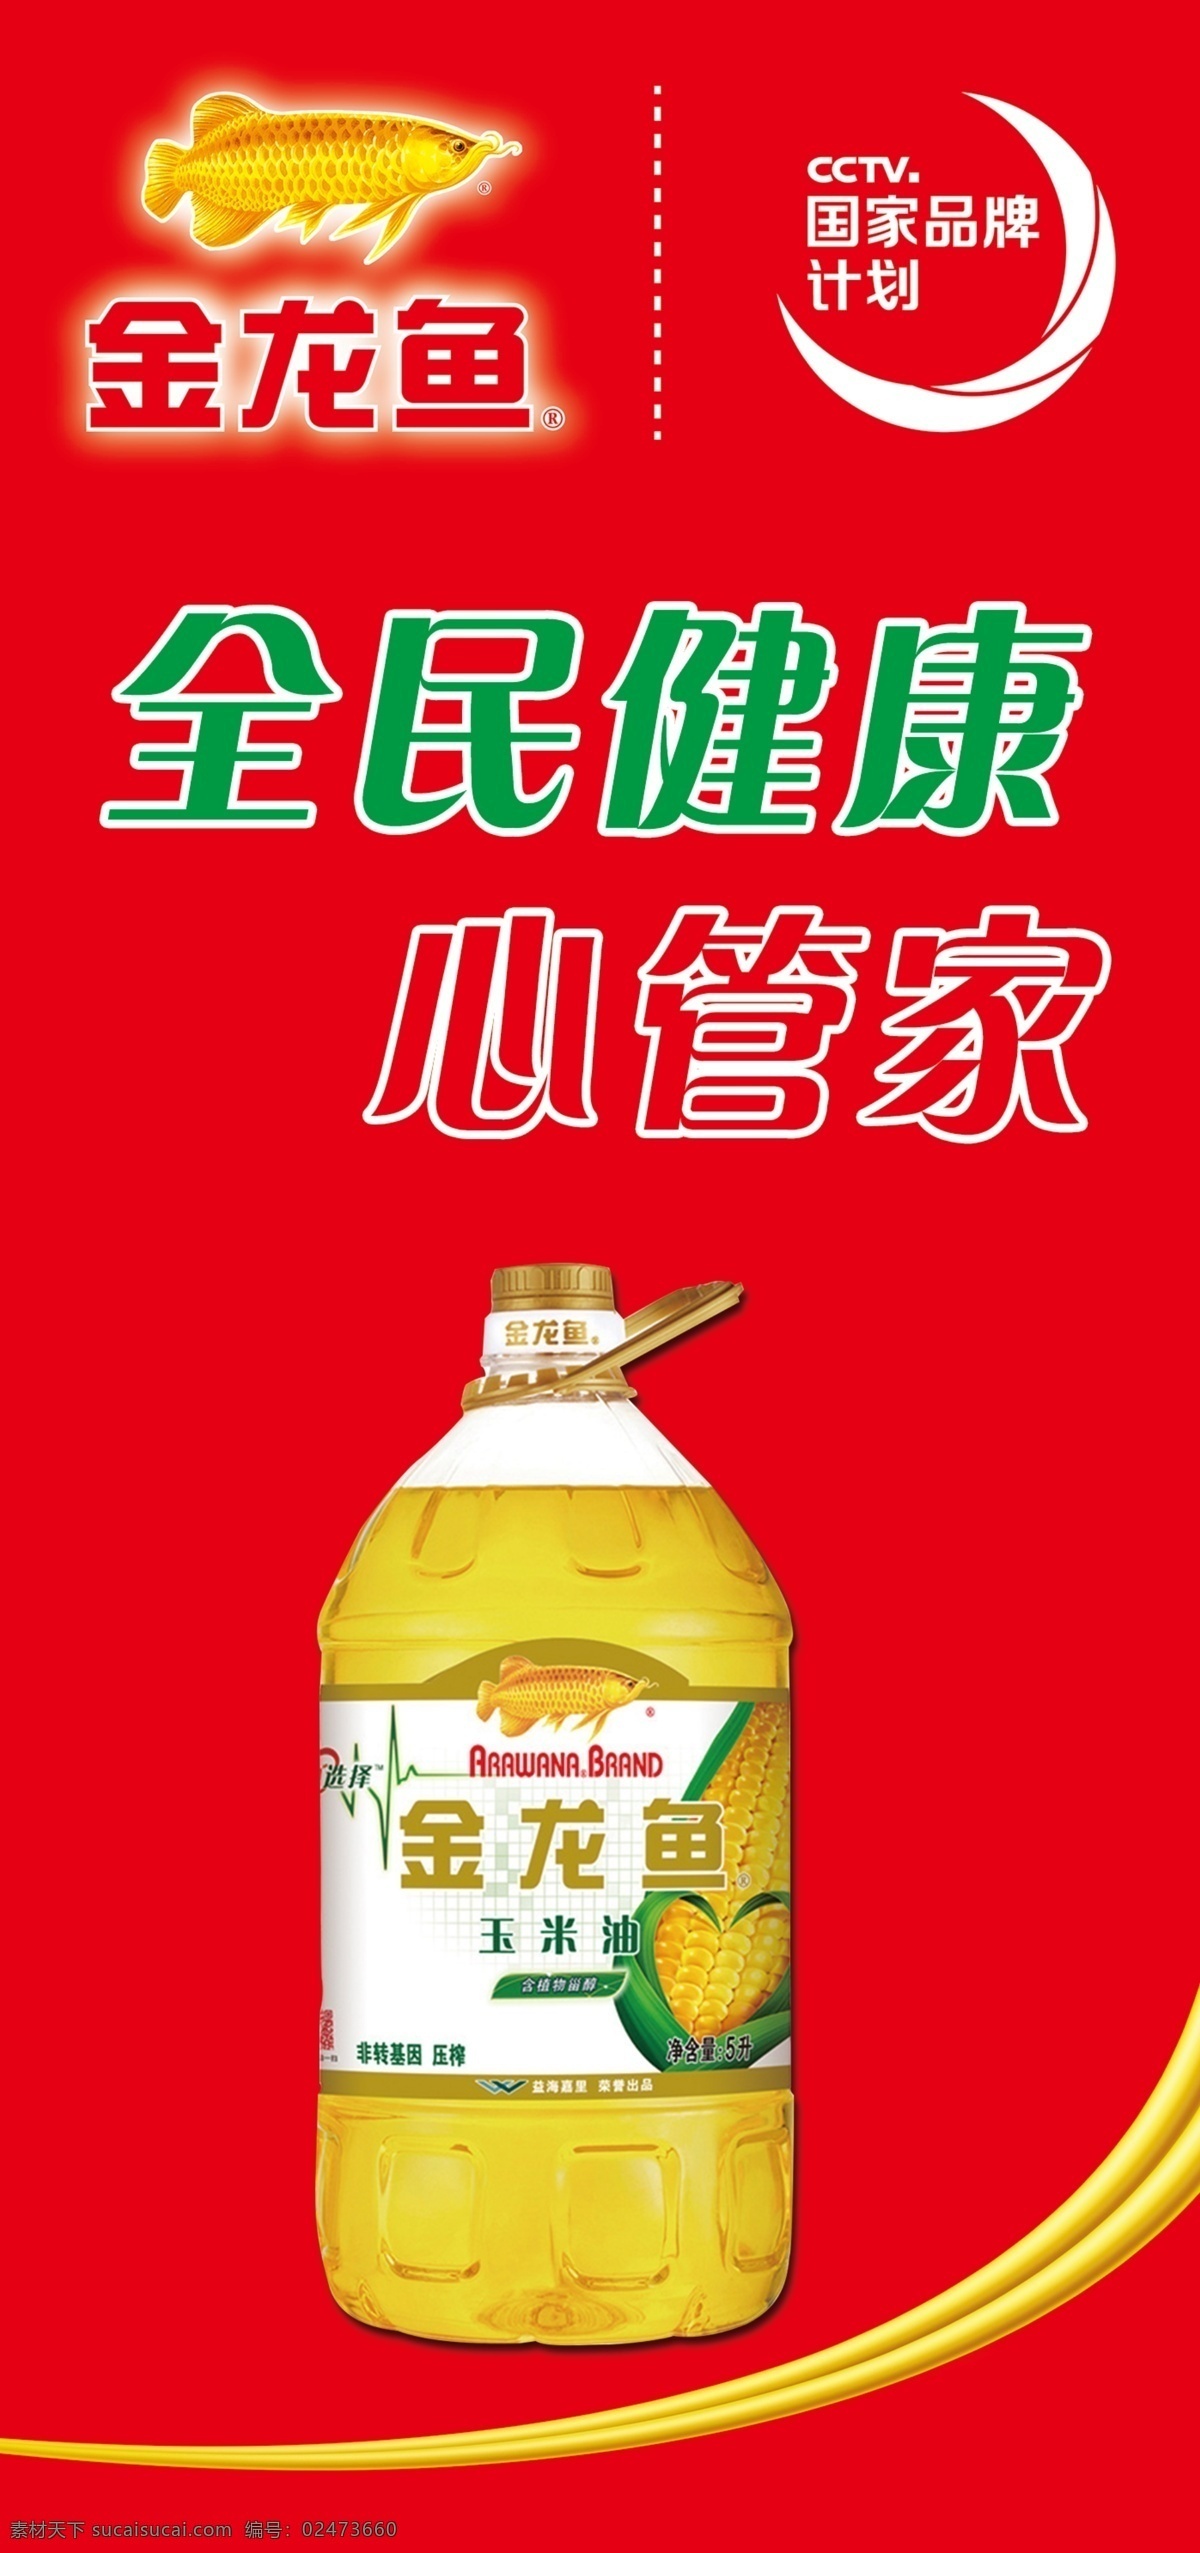 金龙鱼玉米油 金龙鱼 品牌图标 logo cctv 国家品牌计划 专利好油认准 色拉油 食用调和油 玉米油